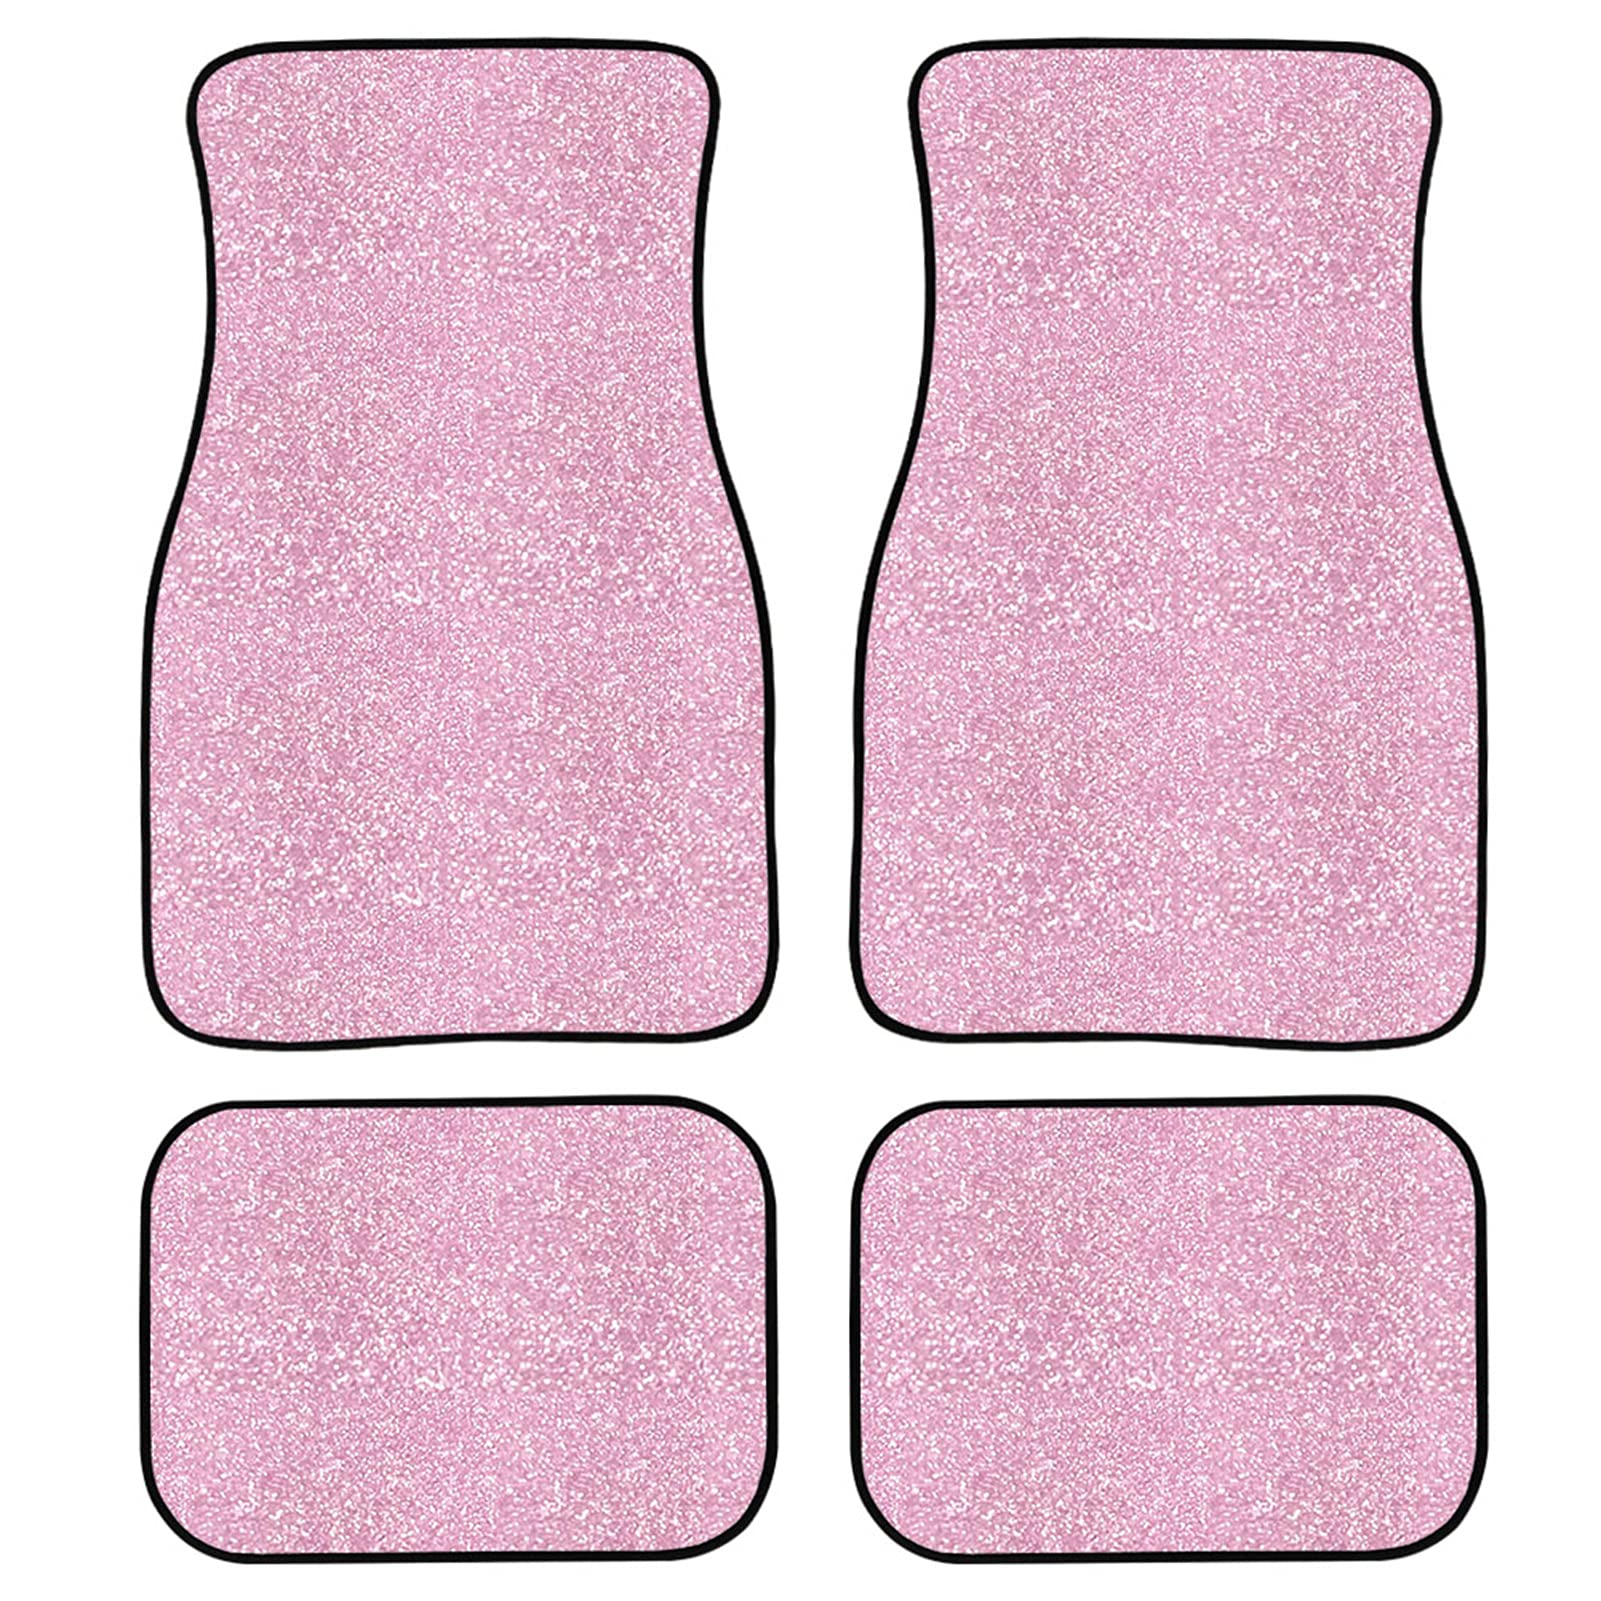 STUOARTE Pinke Fußmatten für Autos, rotgoldene Auto-Fußmatten für jedes Wetter, rosa Auto-Matten, Autozubehör für Frauen, 4 Stück, universelle Passform für Fahrzeug-Bodenpolster von STUOARTE